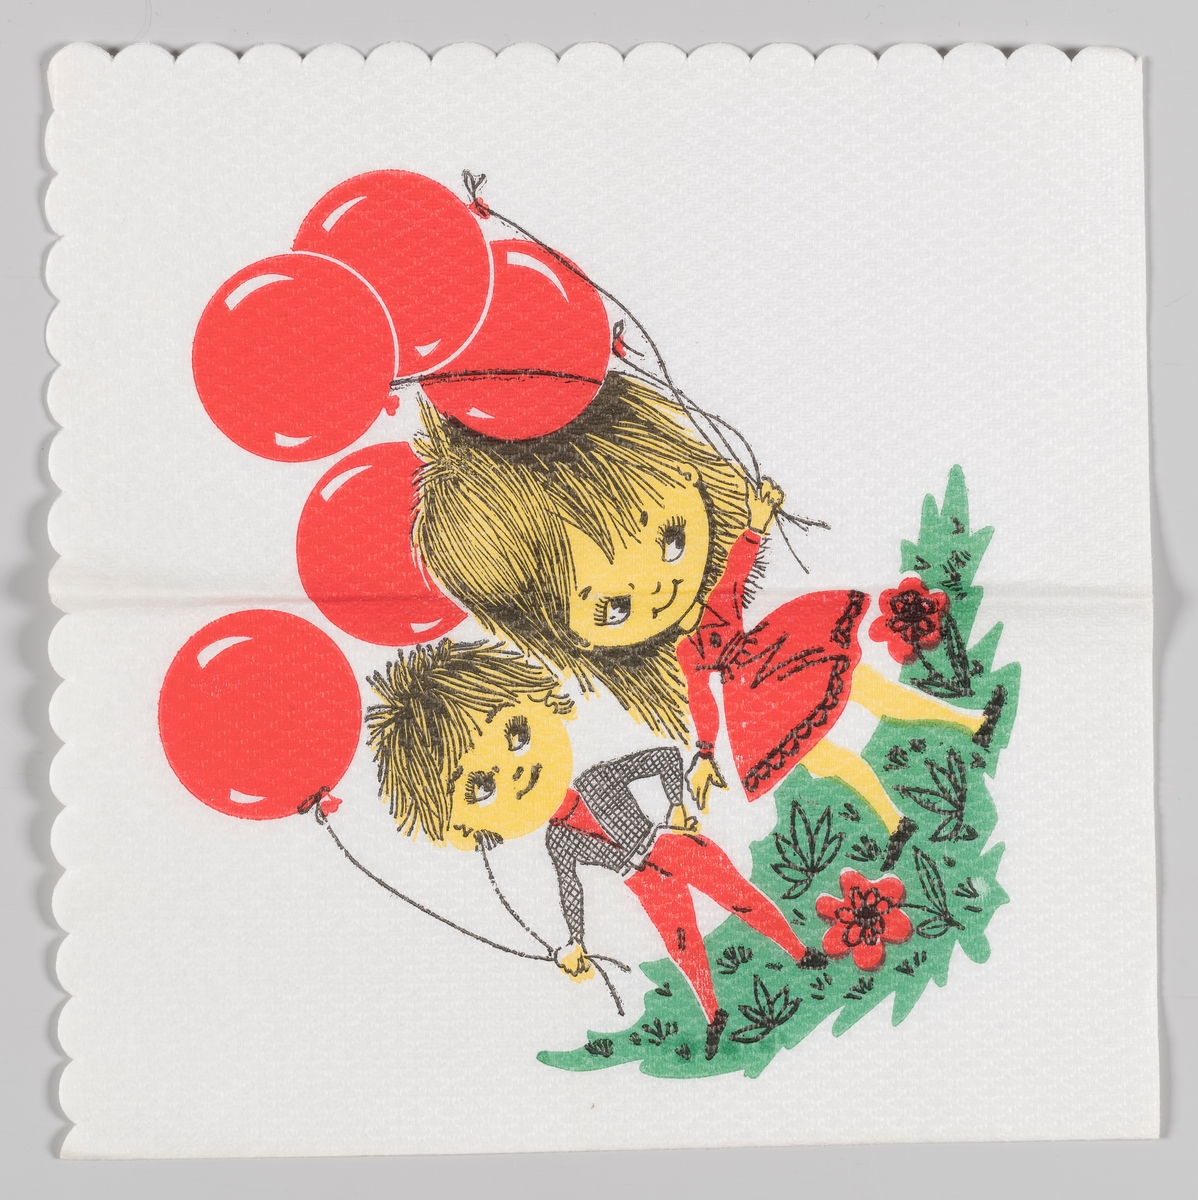 To barn stå rmed røde ballonger i en blomstereng.